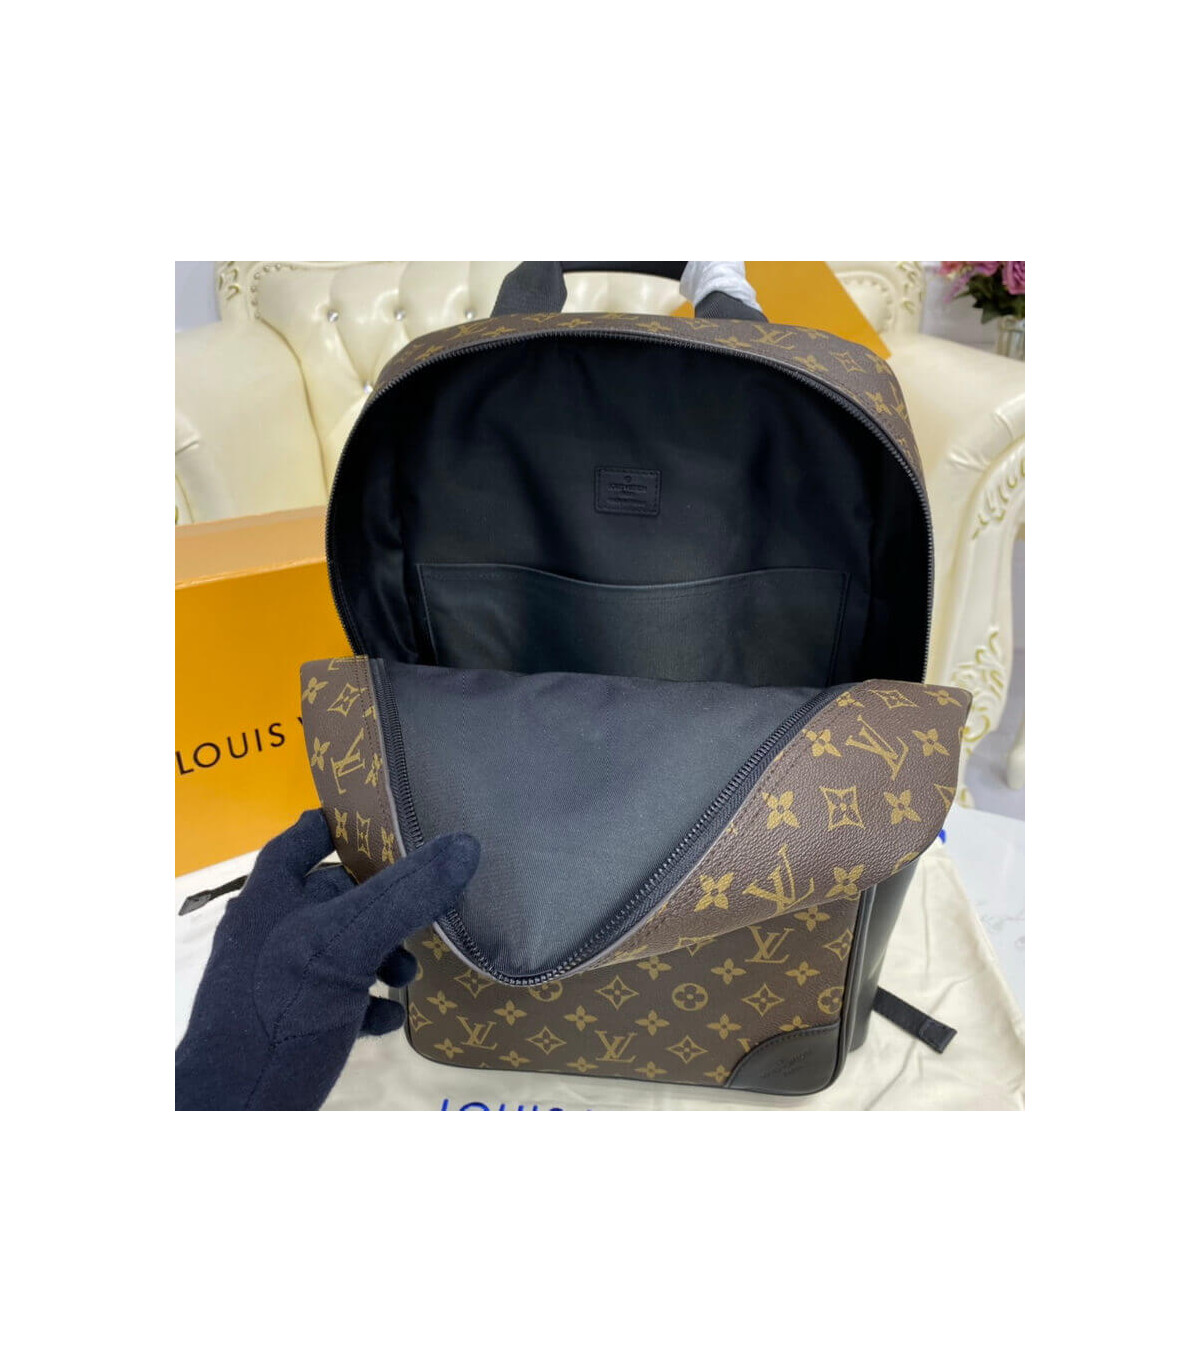 Shop Louis Vuitton Dean backpack (M45335) by LESSISMORE☆